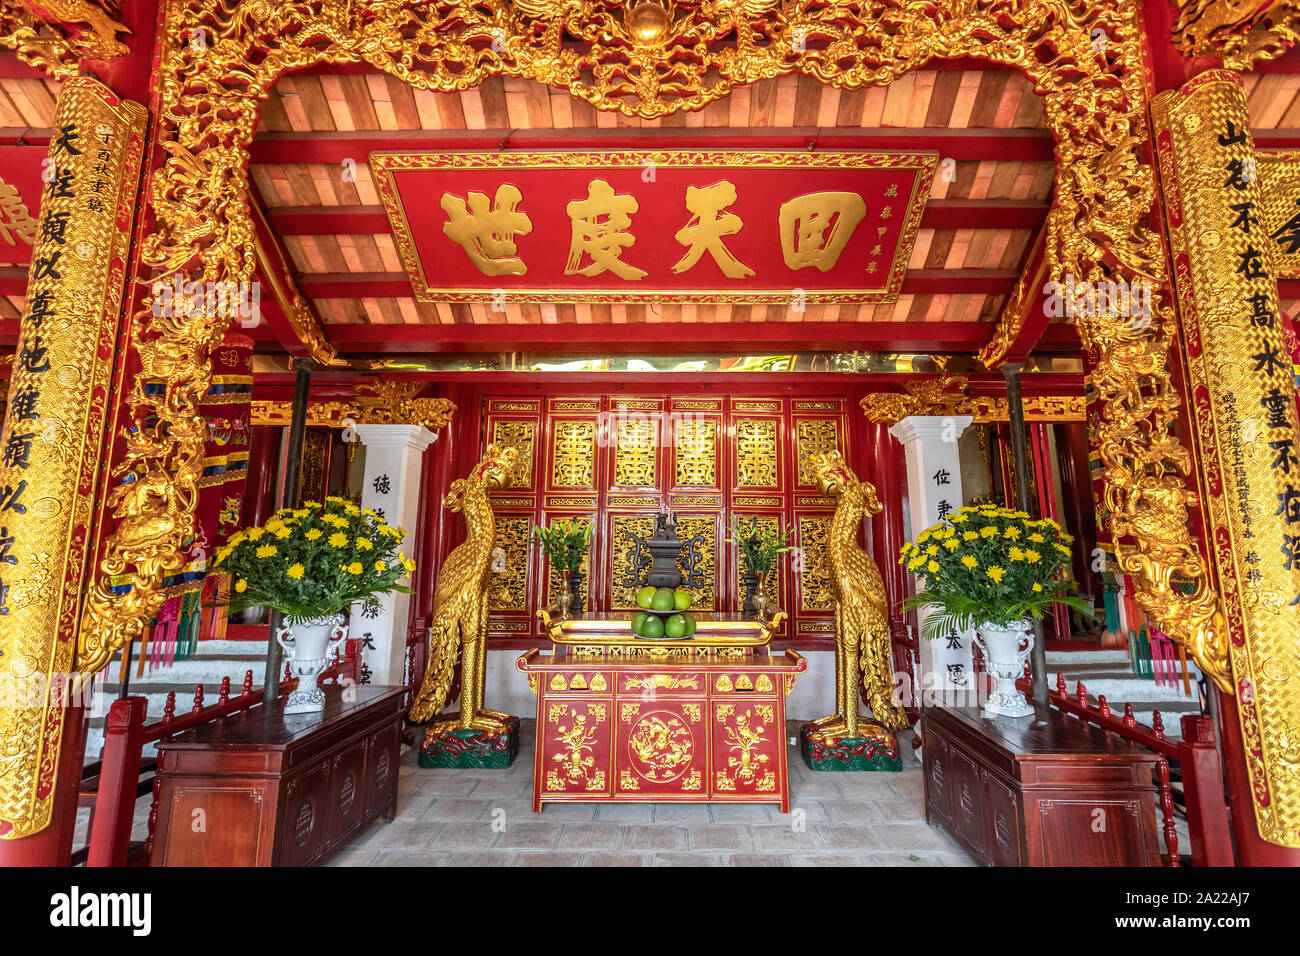 Der Altar im Tempel Jade Mountain im Turtle Island am Hoan Kiem See. Buddhistische Tempel in Vietnam. Stockfoto